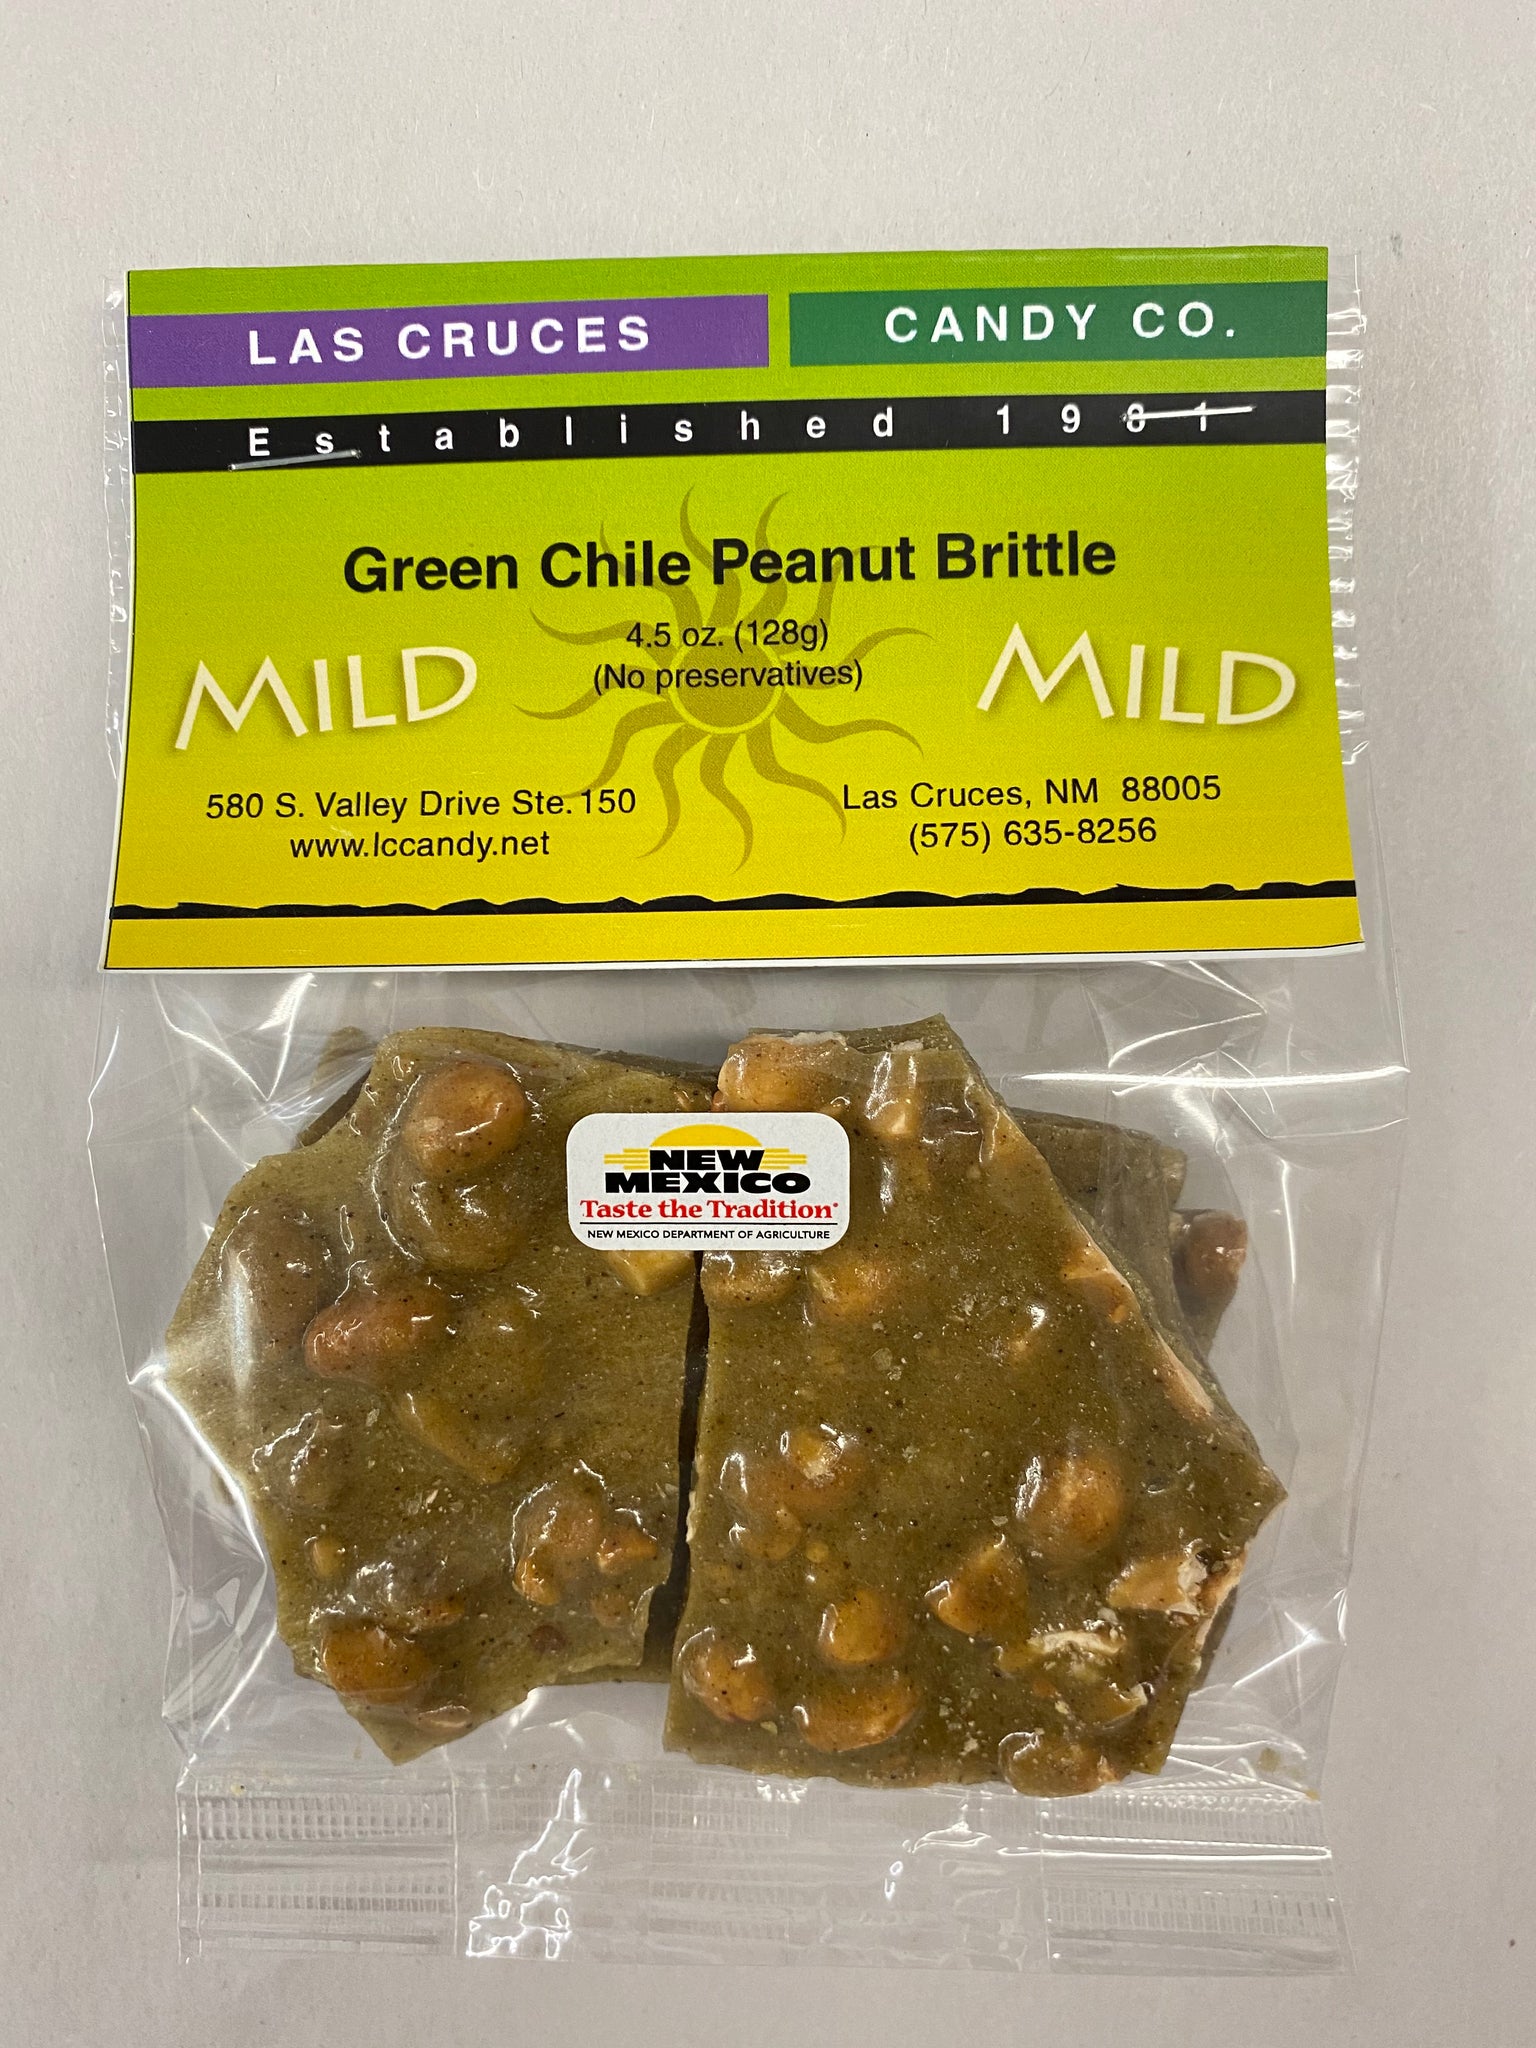 Green Chile Peanut Brittle